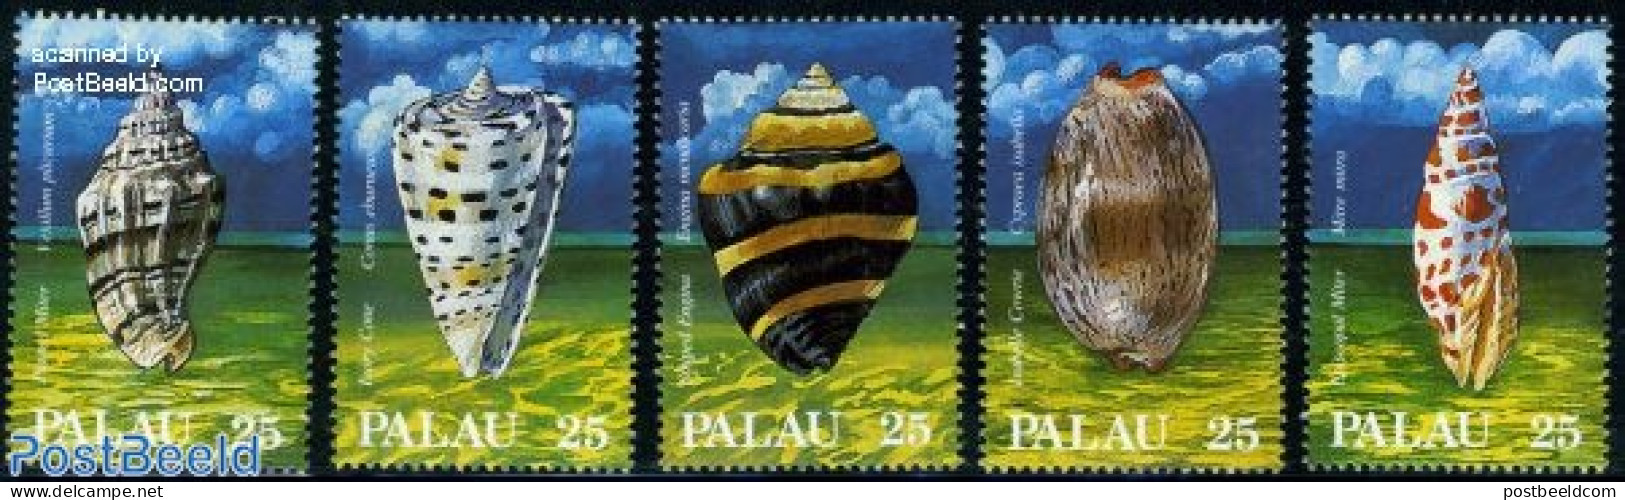 Palau 1988 Shells 5v, Mint NH, Nature - Shells & Crustaceans - Mundo Aquatico